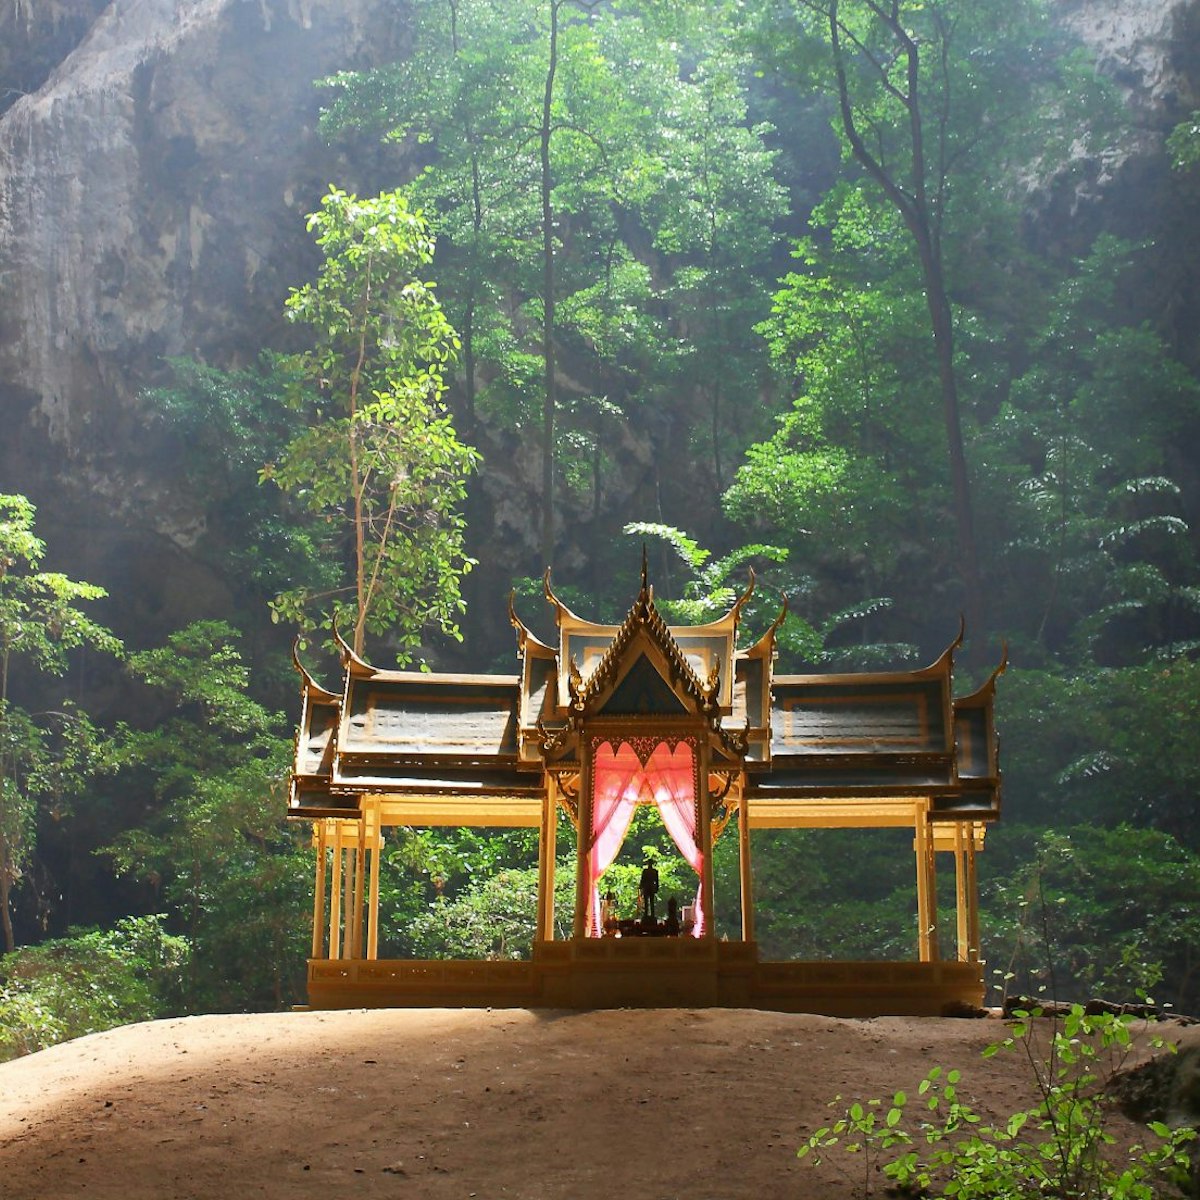 Phraya Nakhon Cave in Sam Roi Yot National Park at Prachuap Khiri Khan province in Thailand.